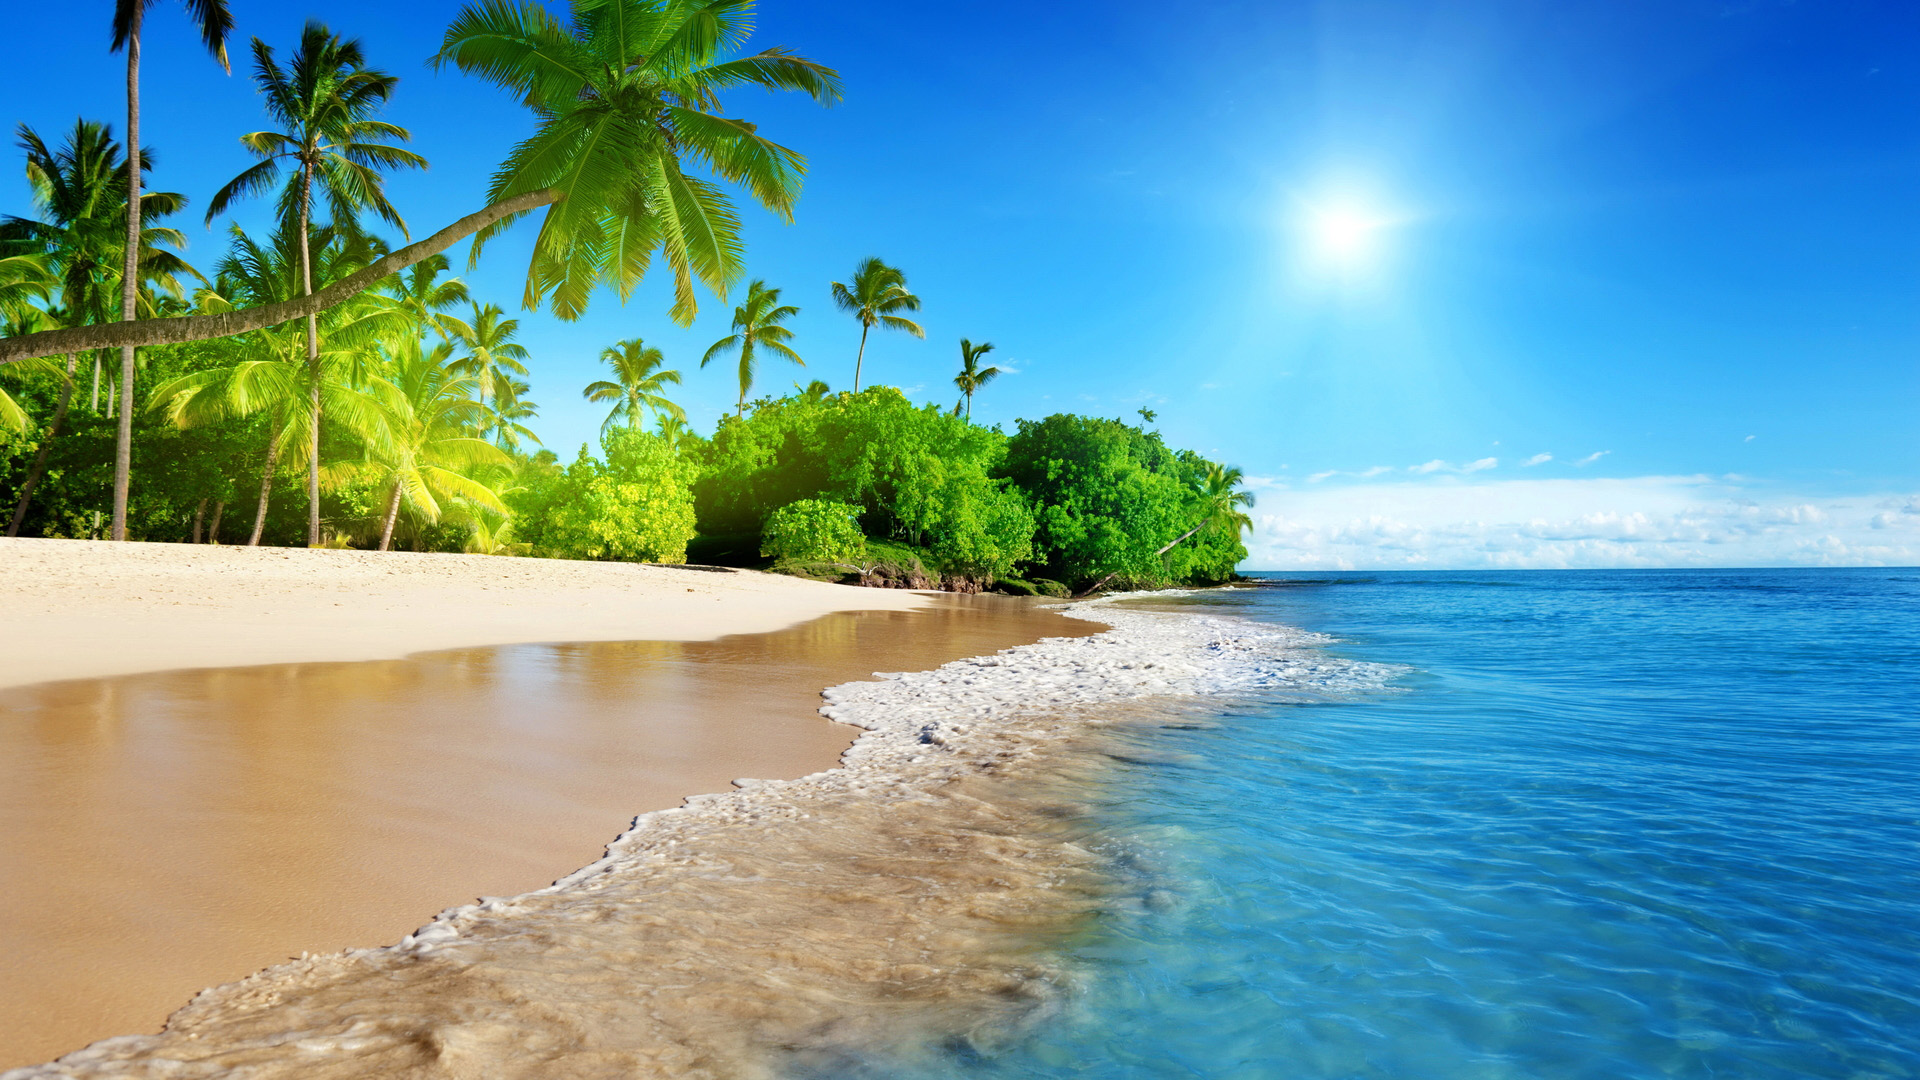 蔚蓝的大海,海边,沙滩,树,太阳,风景壁纸